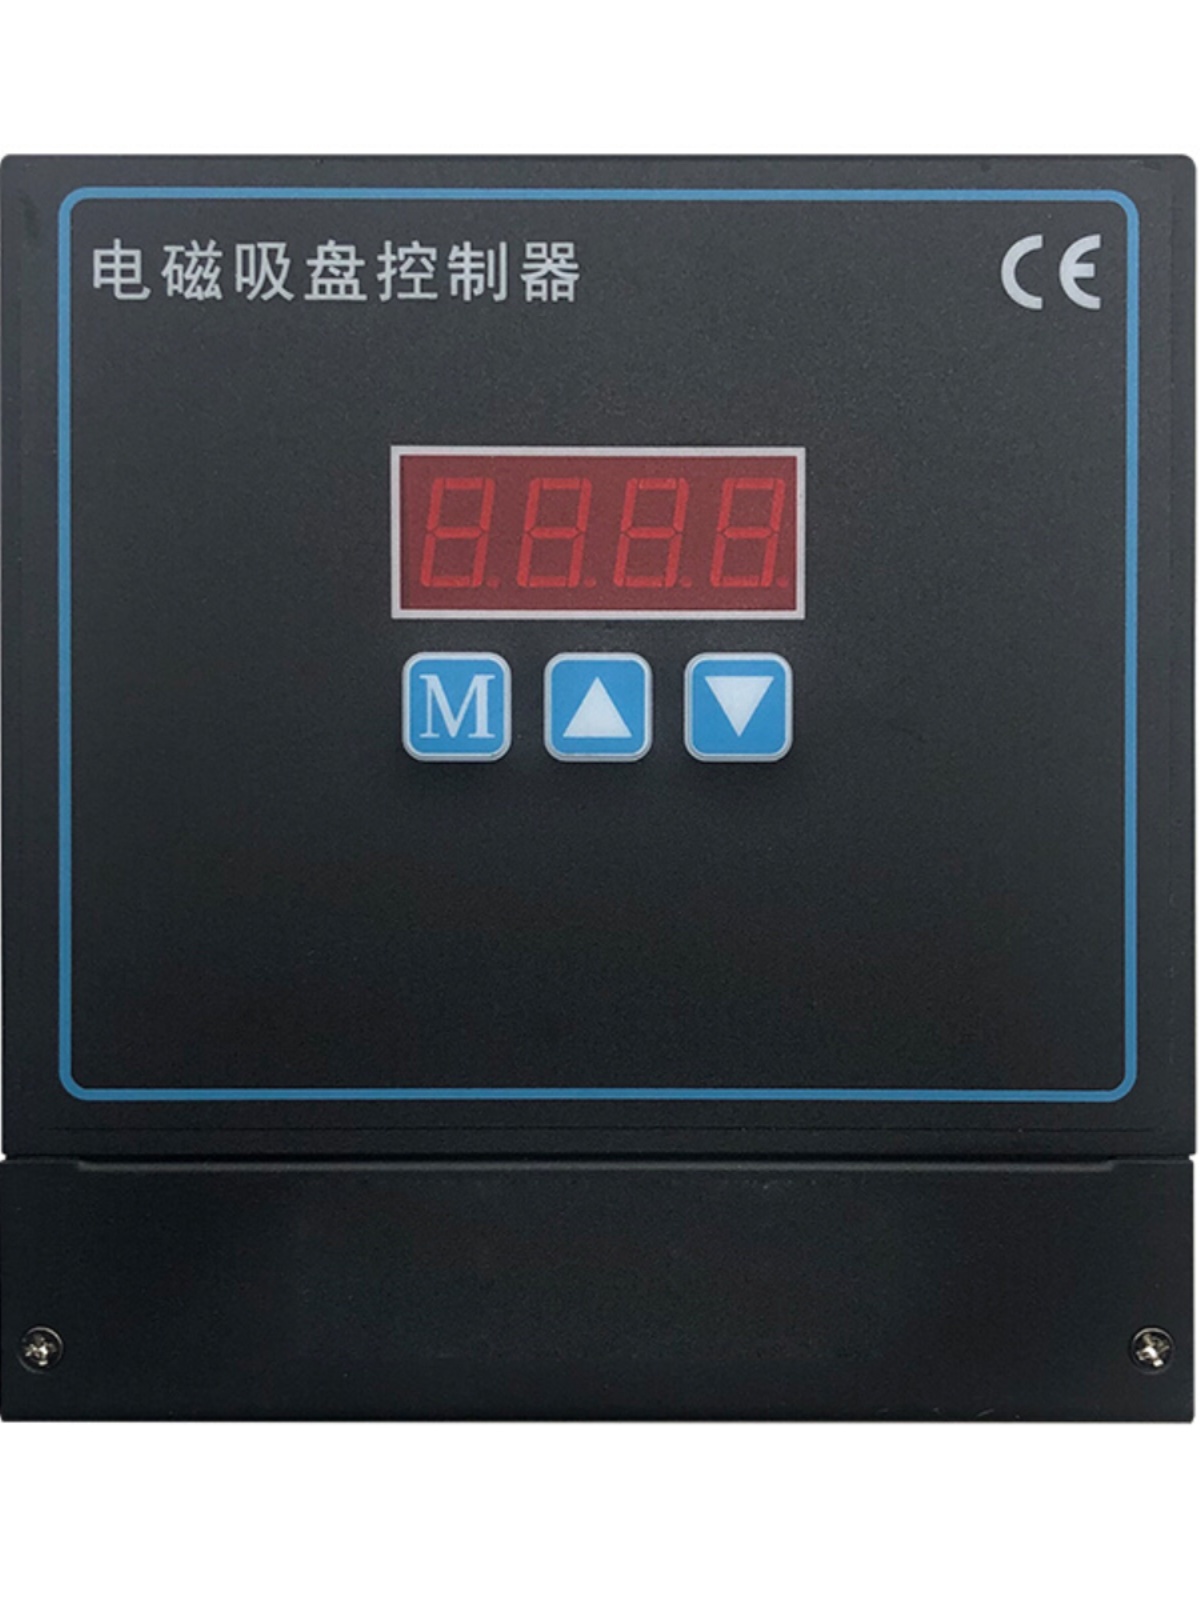 库平面磨床铣床电磁吸盘控制器充退磁控制器吸退磁整流控制器维销